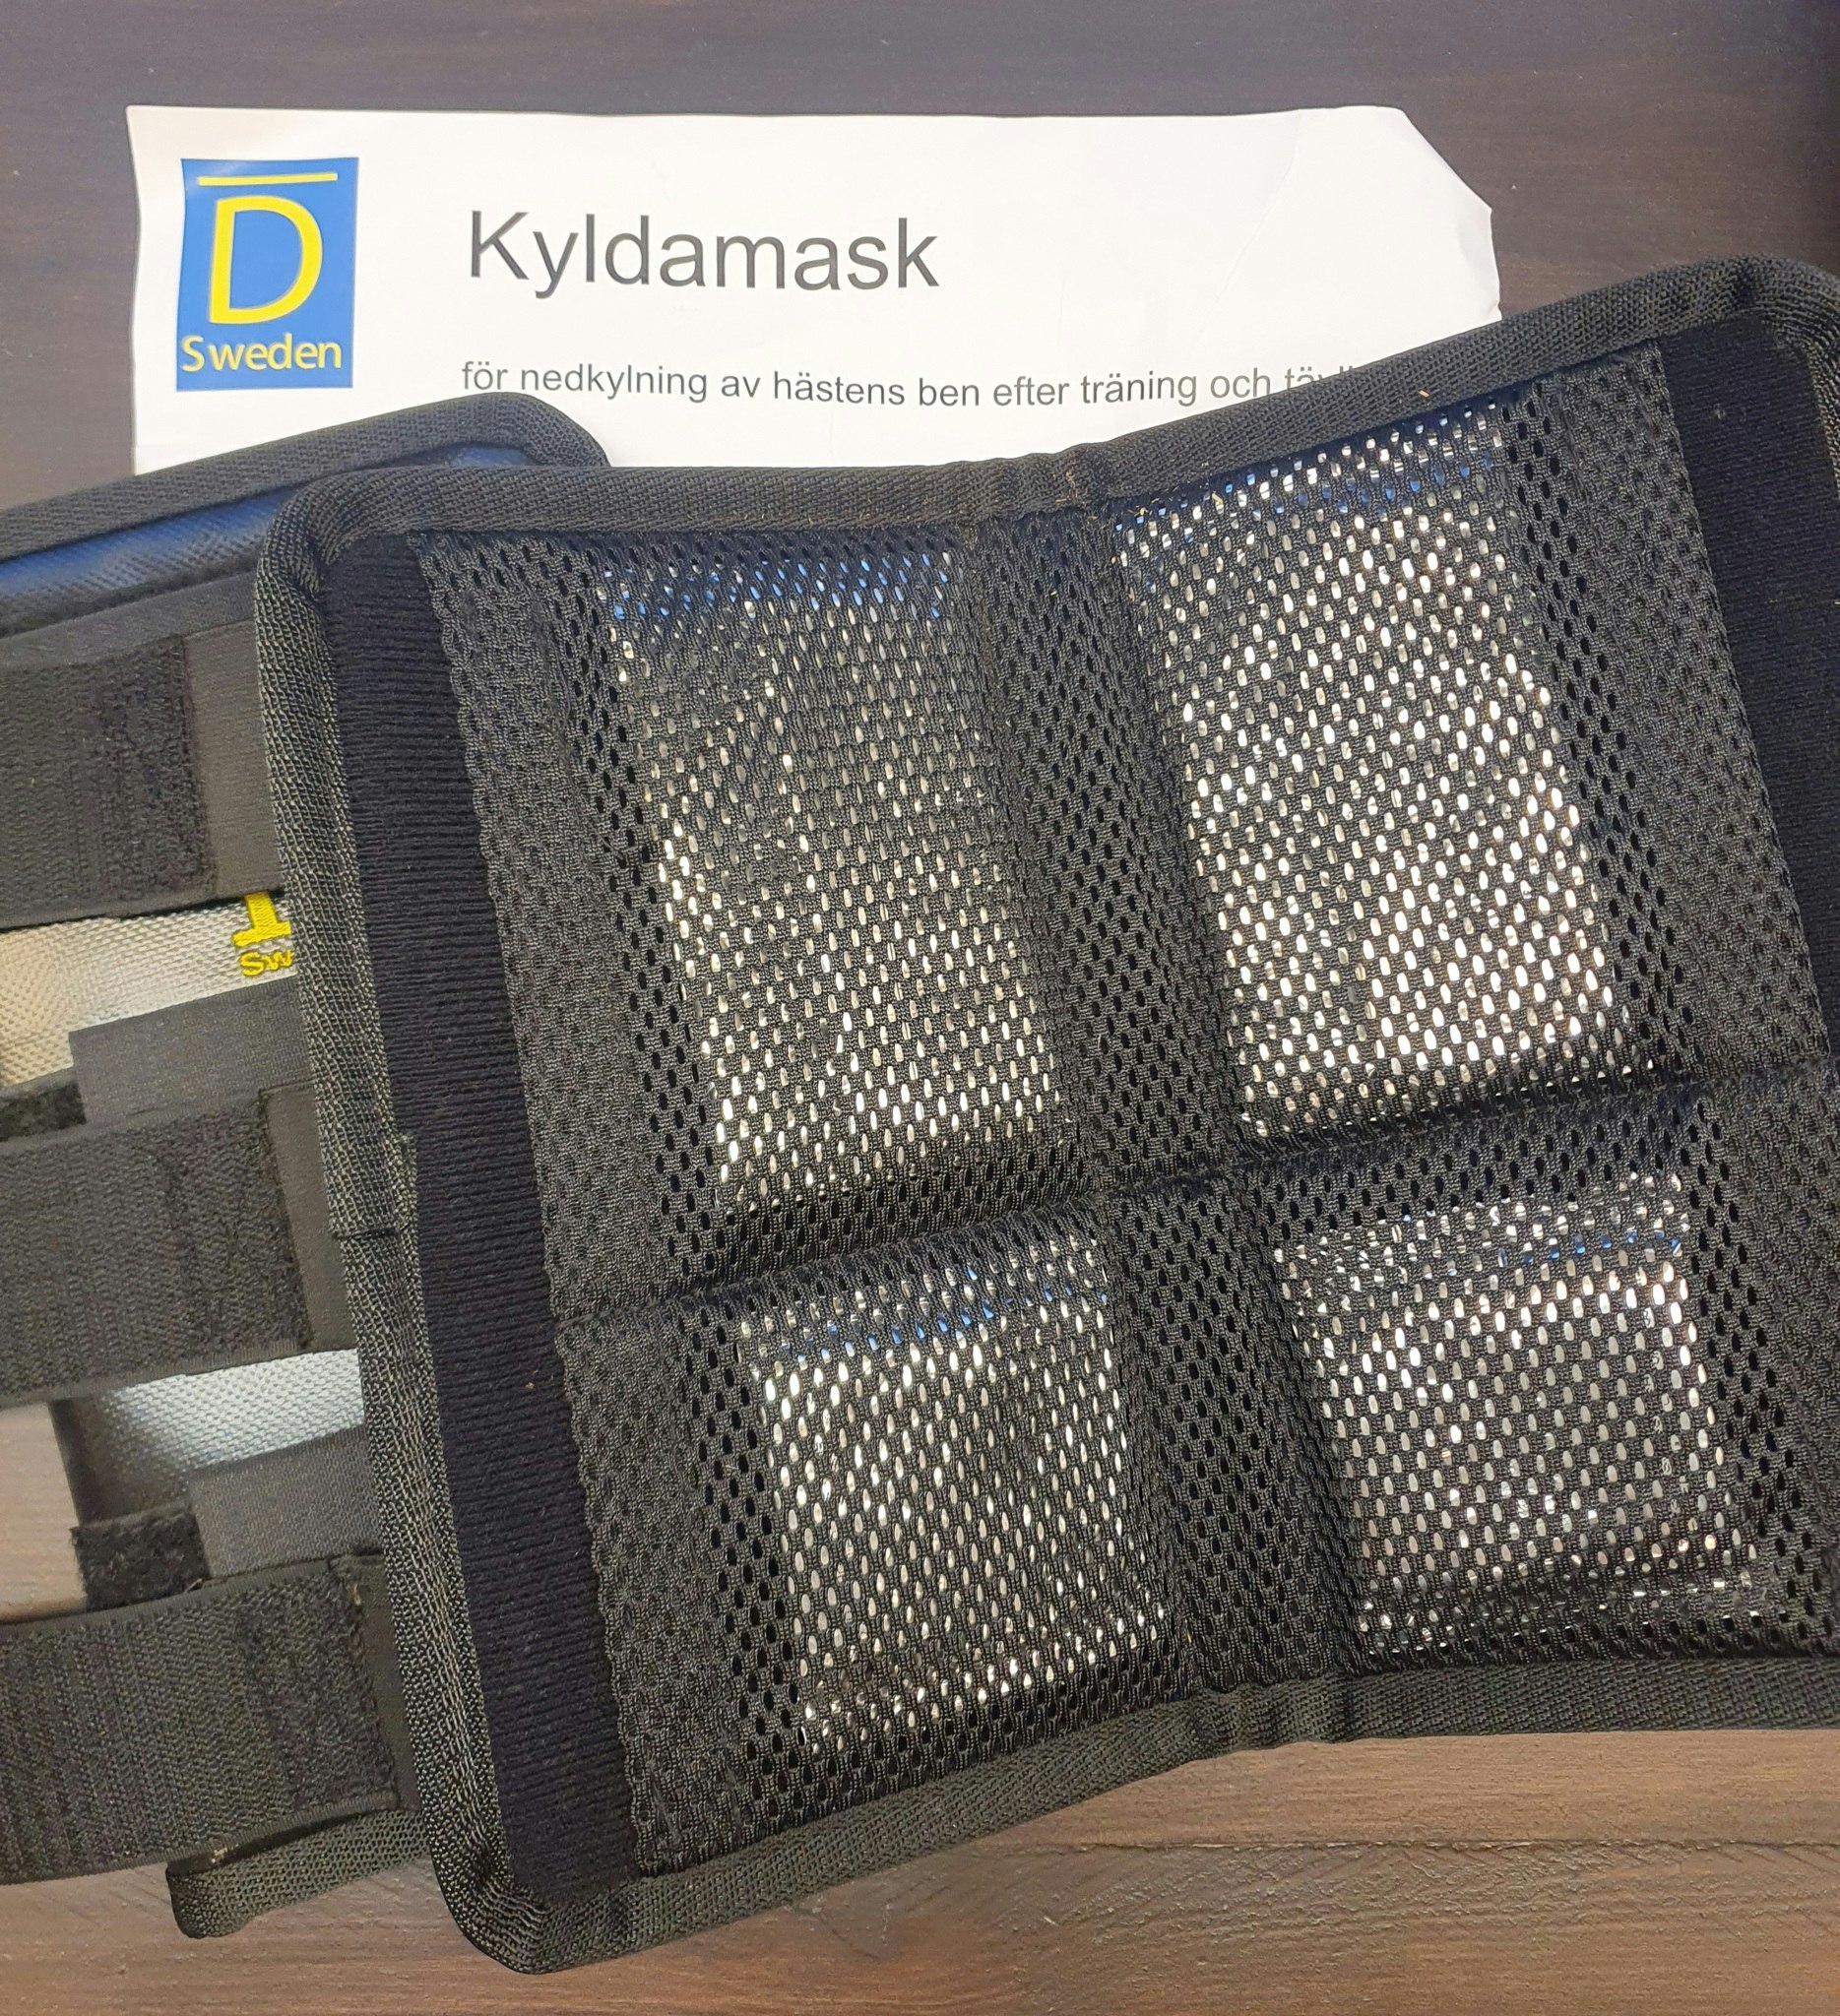 D Sweden Kyldamask